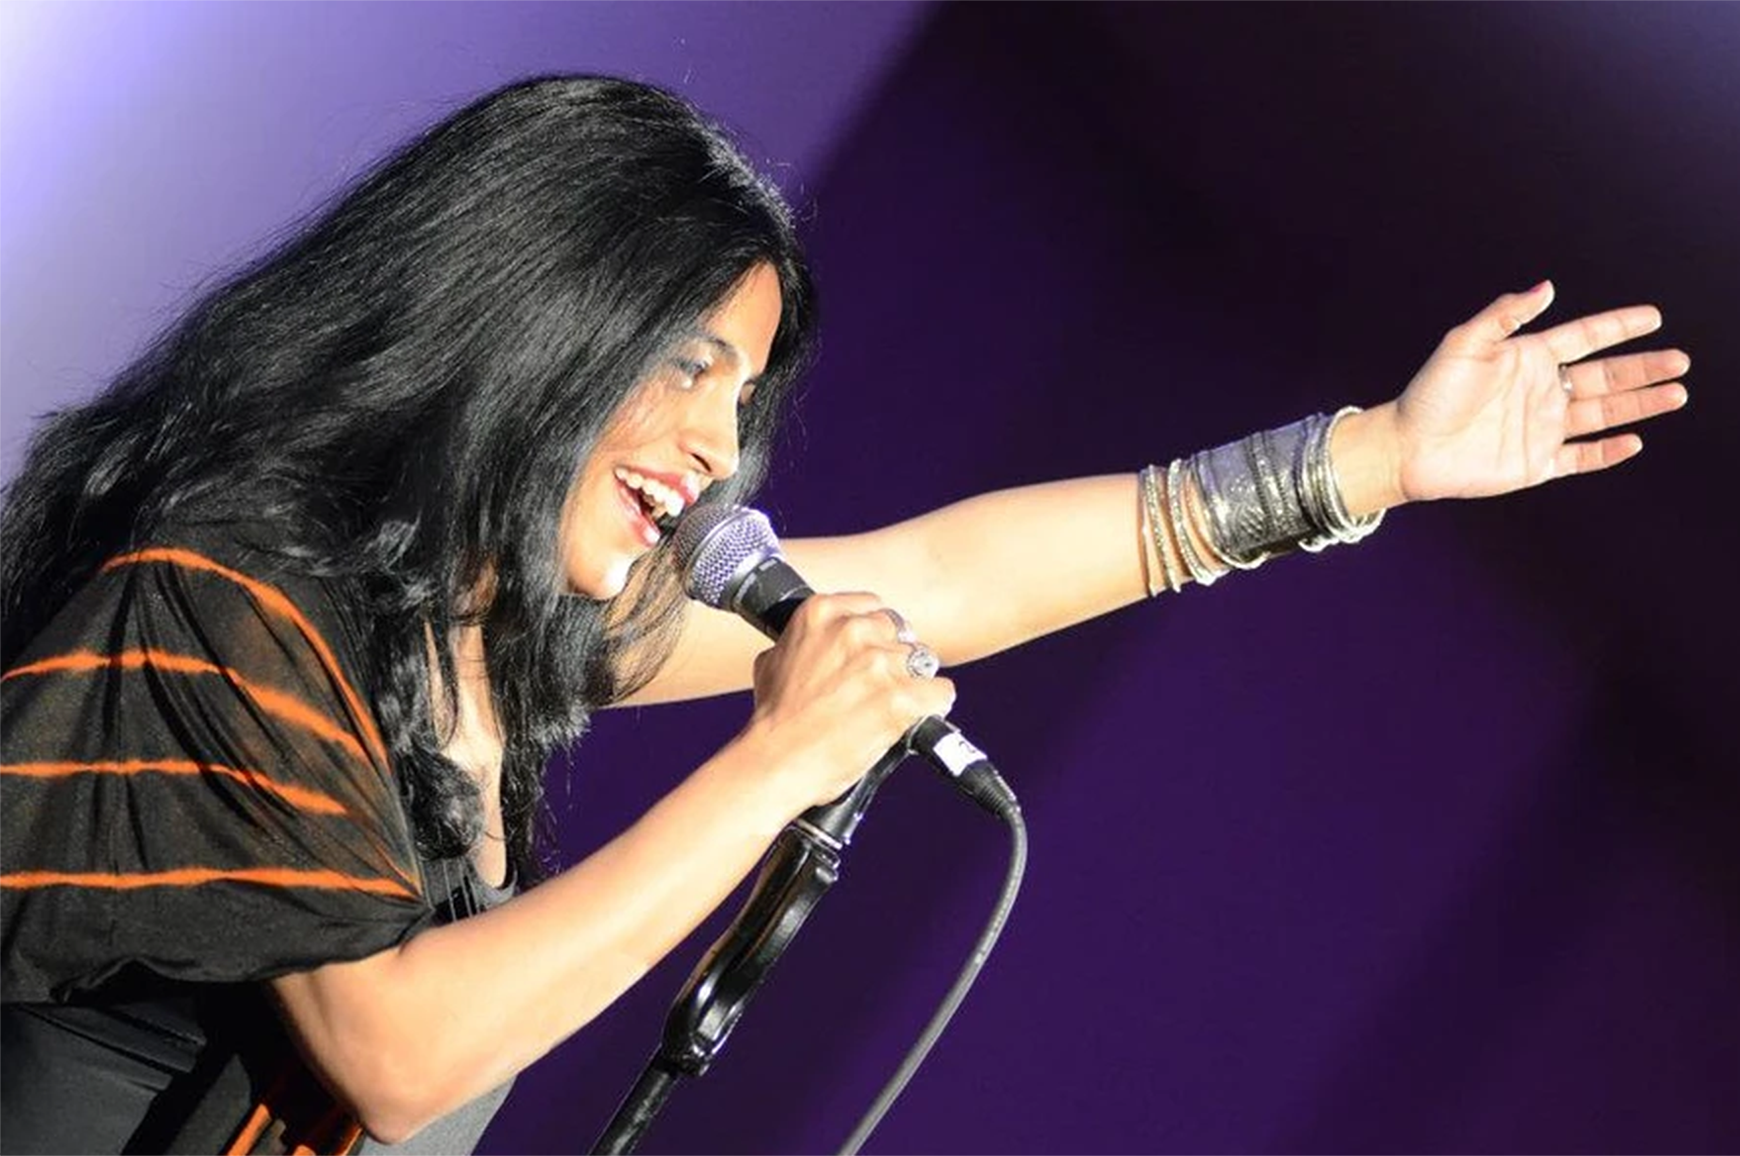 Imagen del cantante Falu sosteniendo el micrófono cantando con fondo morado